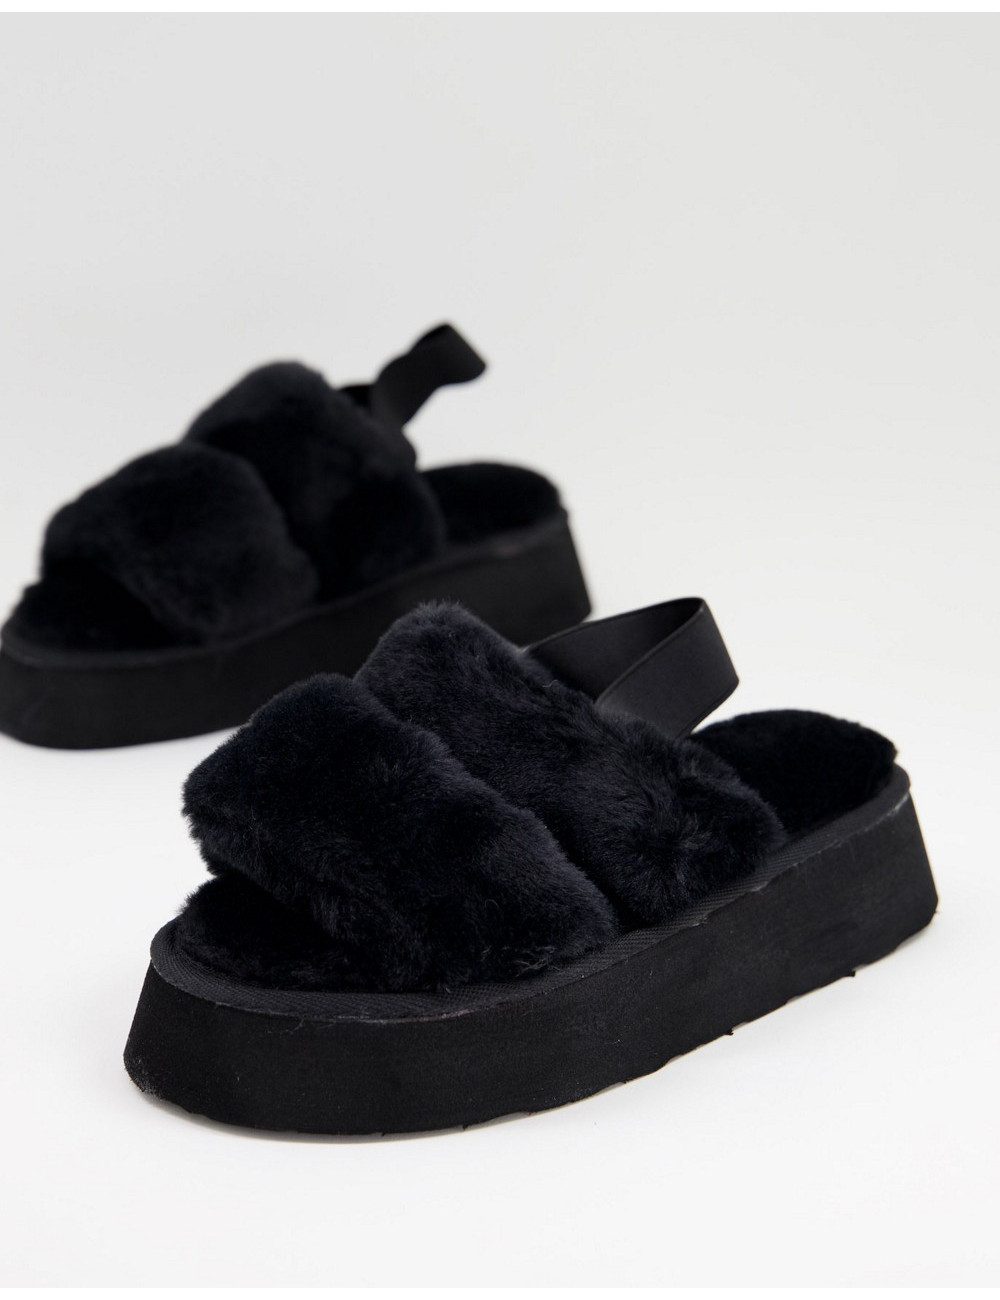 Ego Tata slippers in black